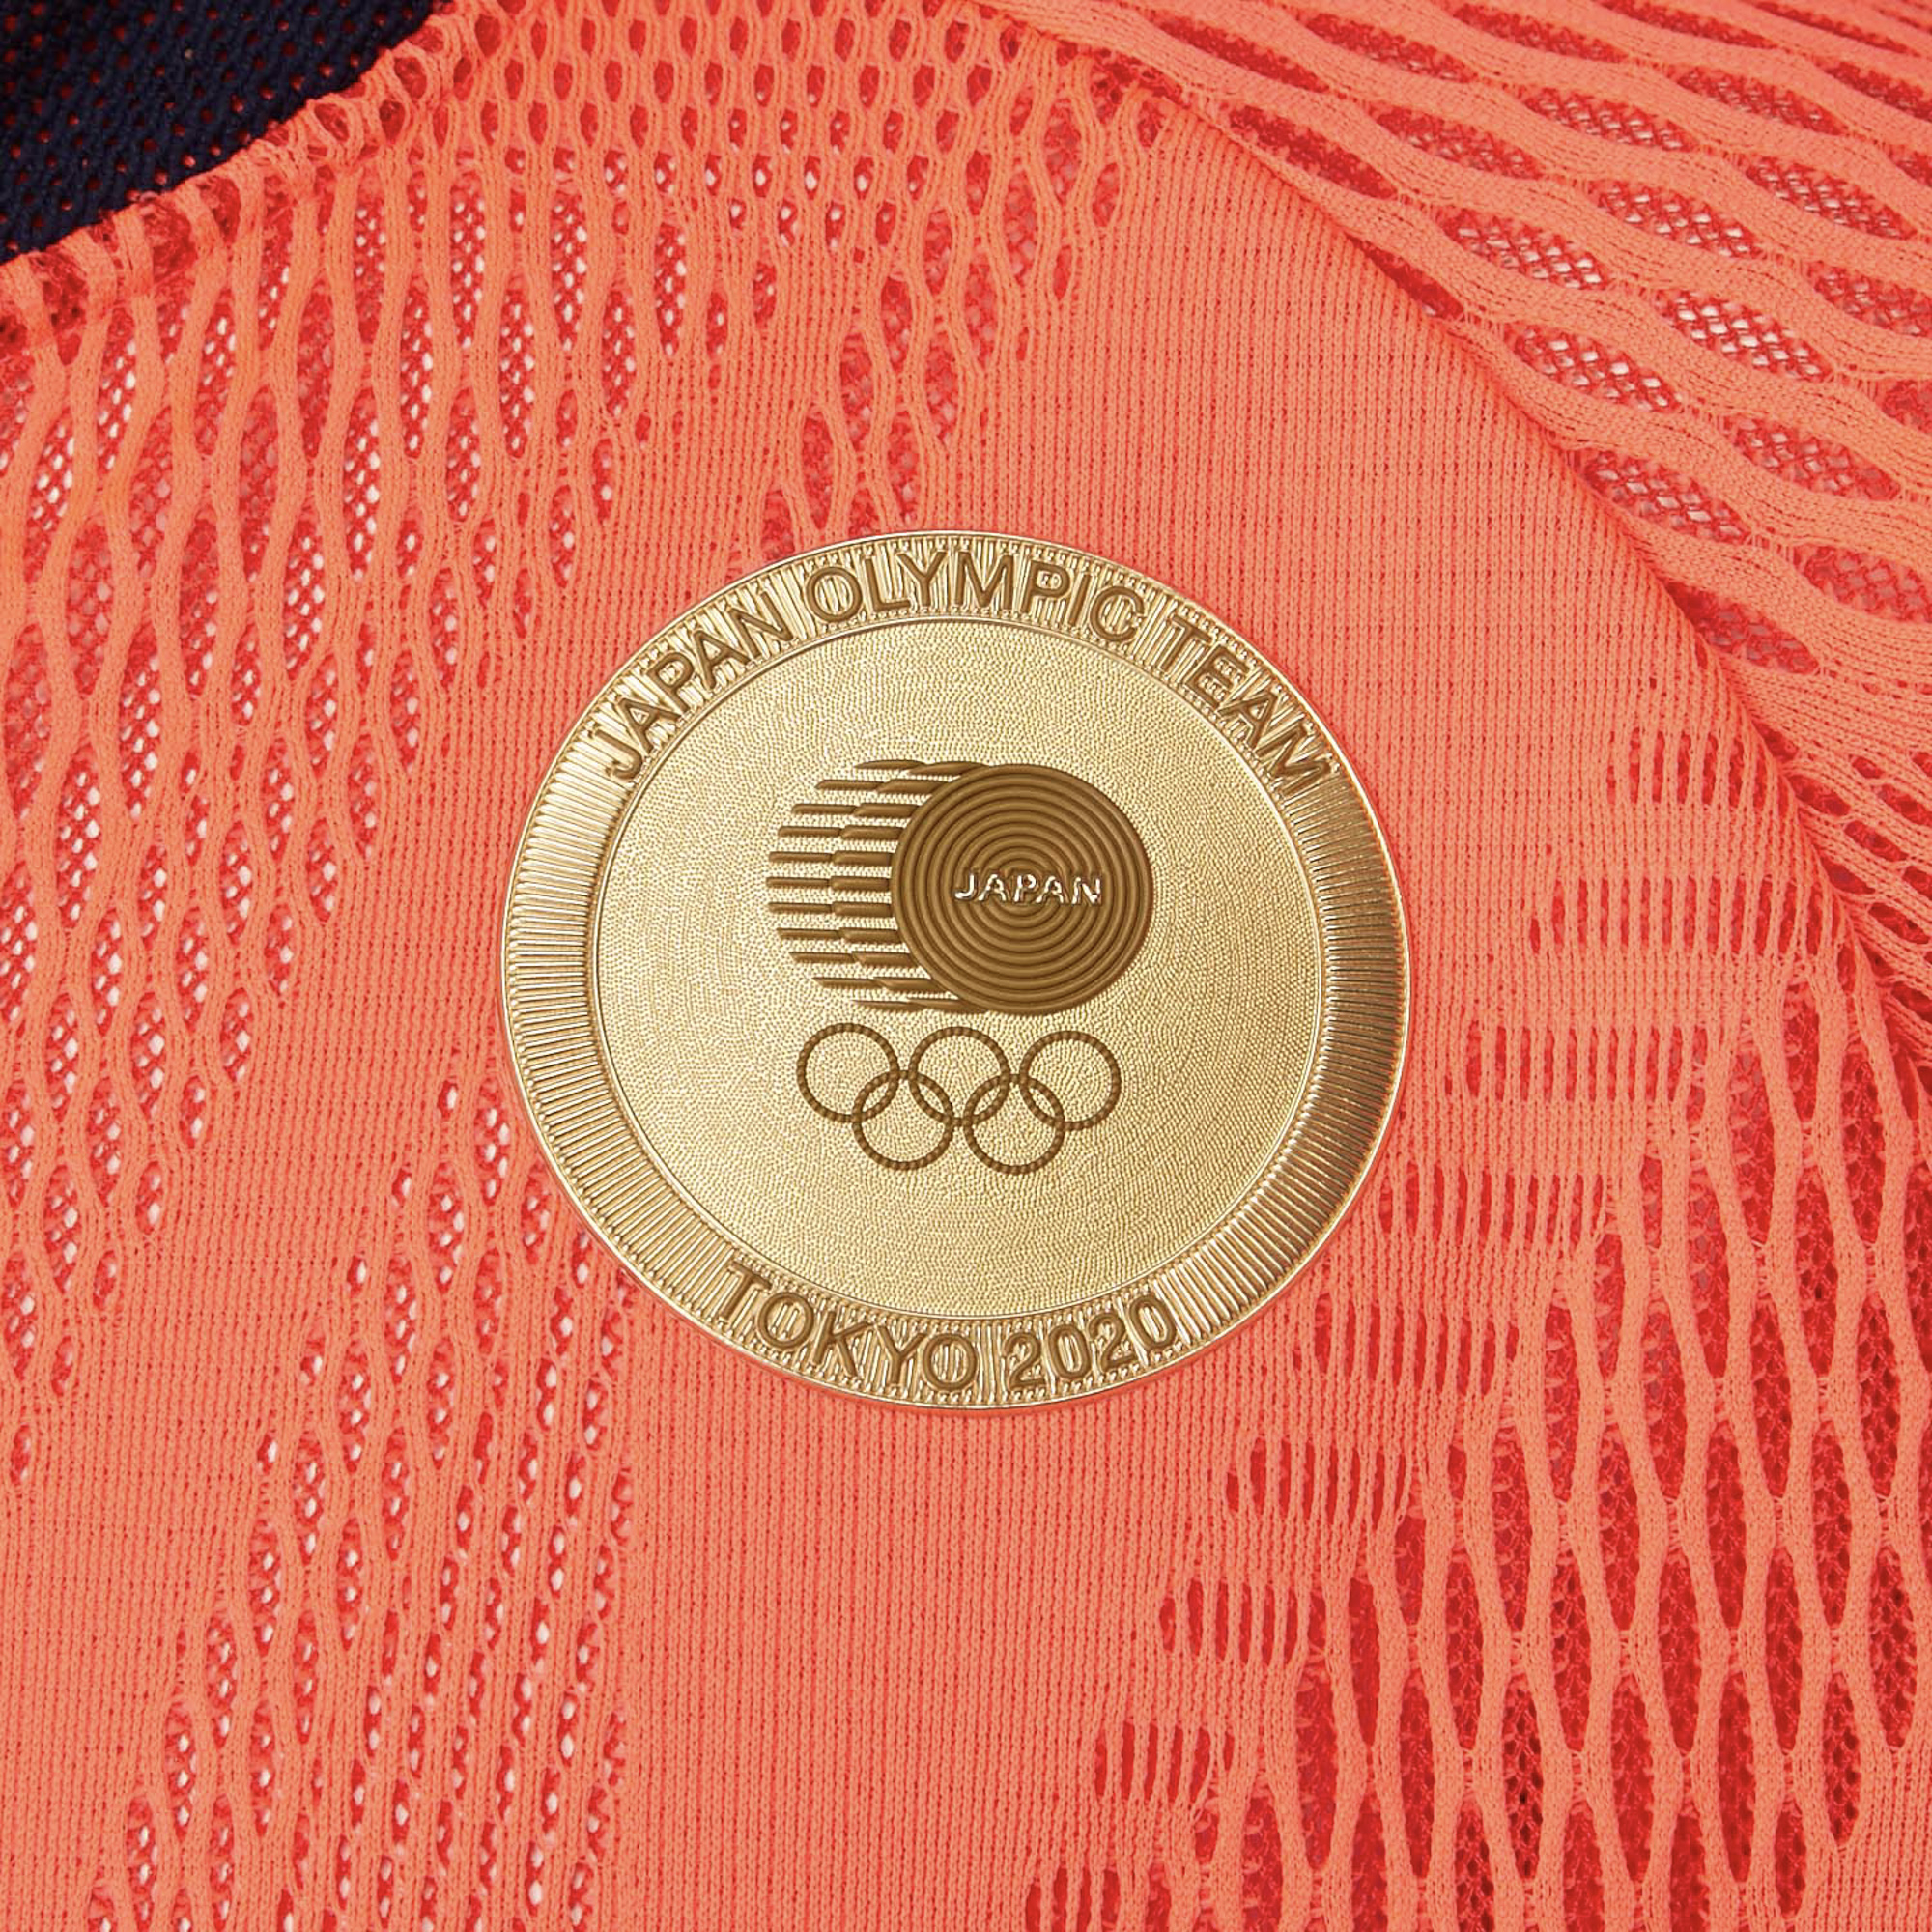 アシックス、日本選手団が着用している「ポディウムジャケット」の 